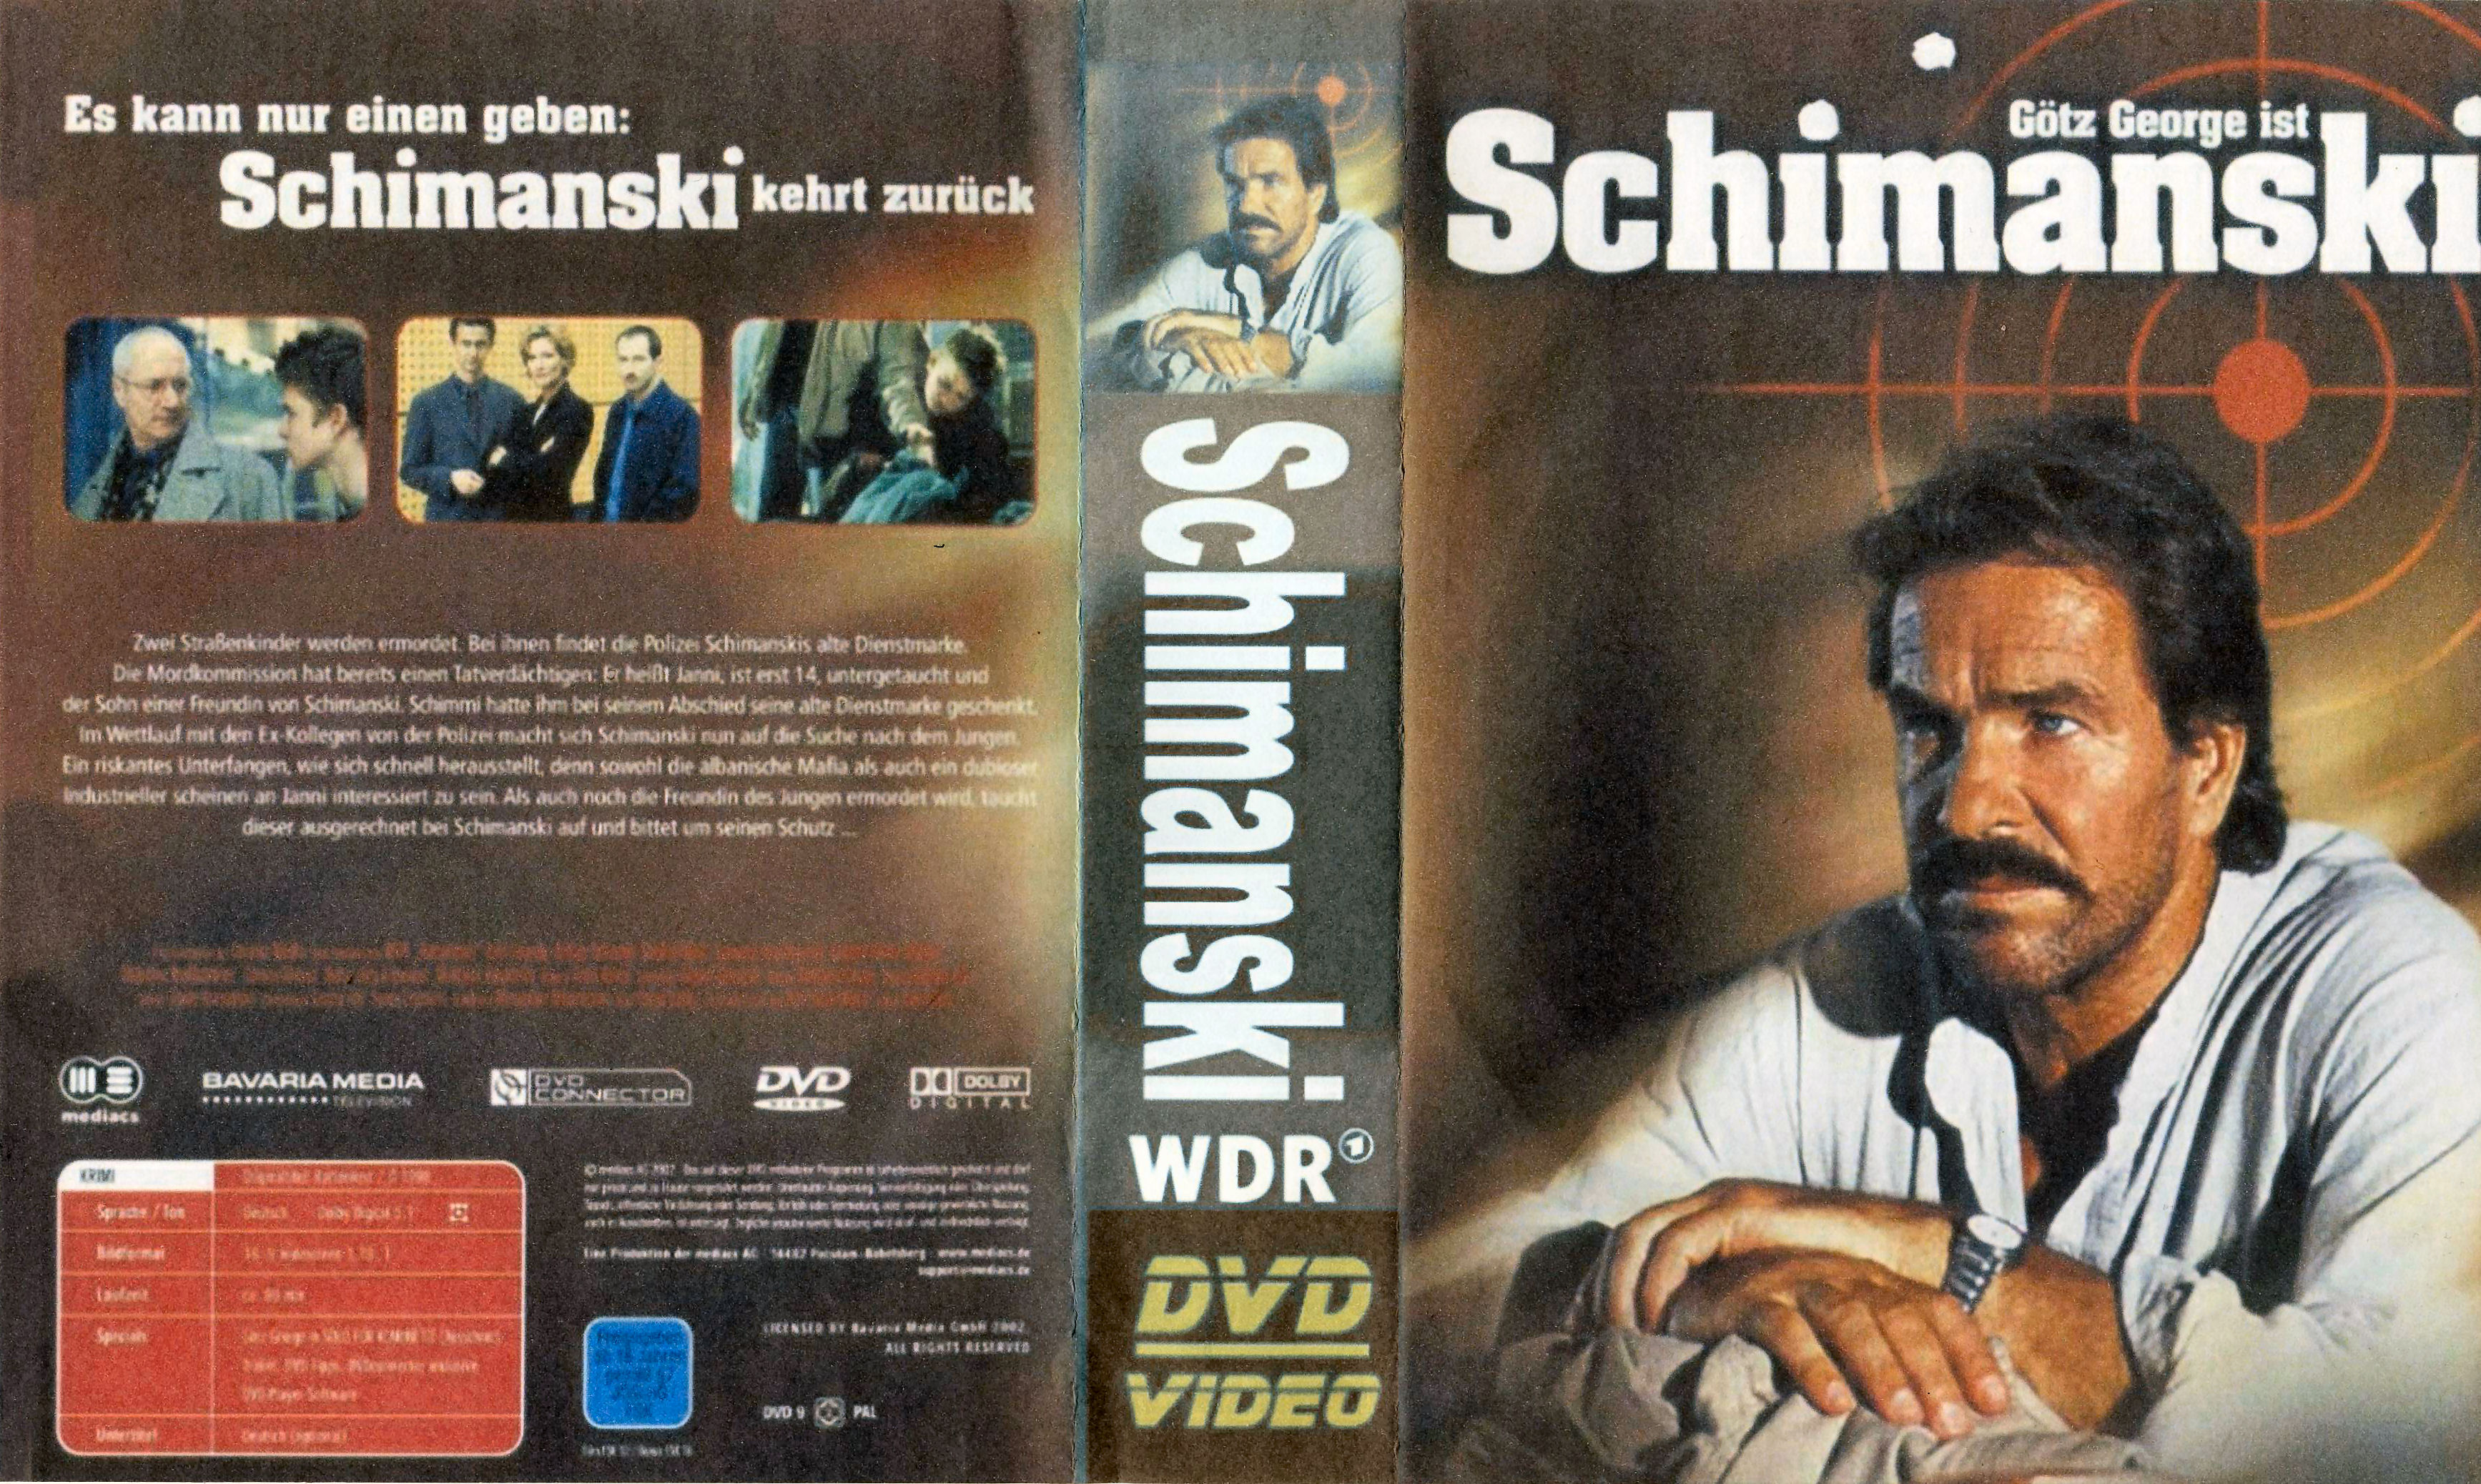 Schimanski Collectie - DvD 9